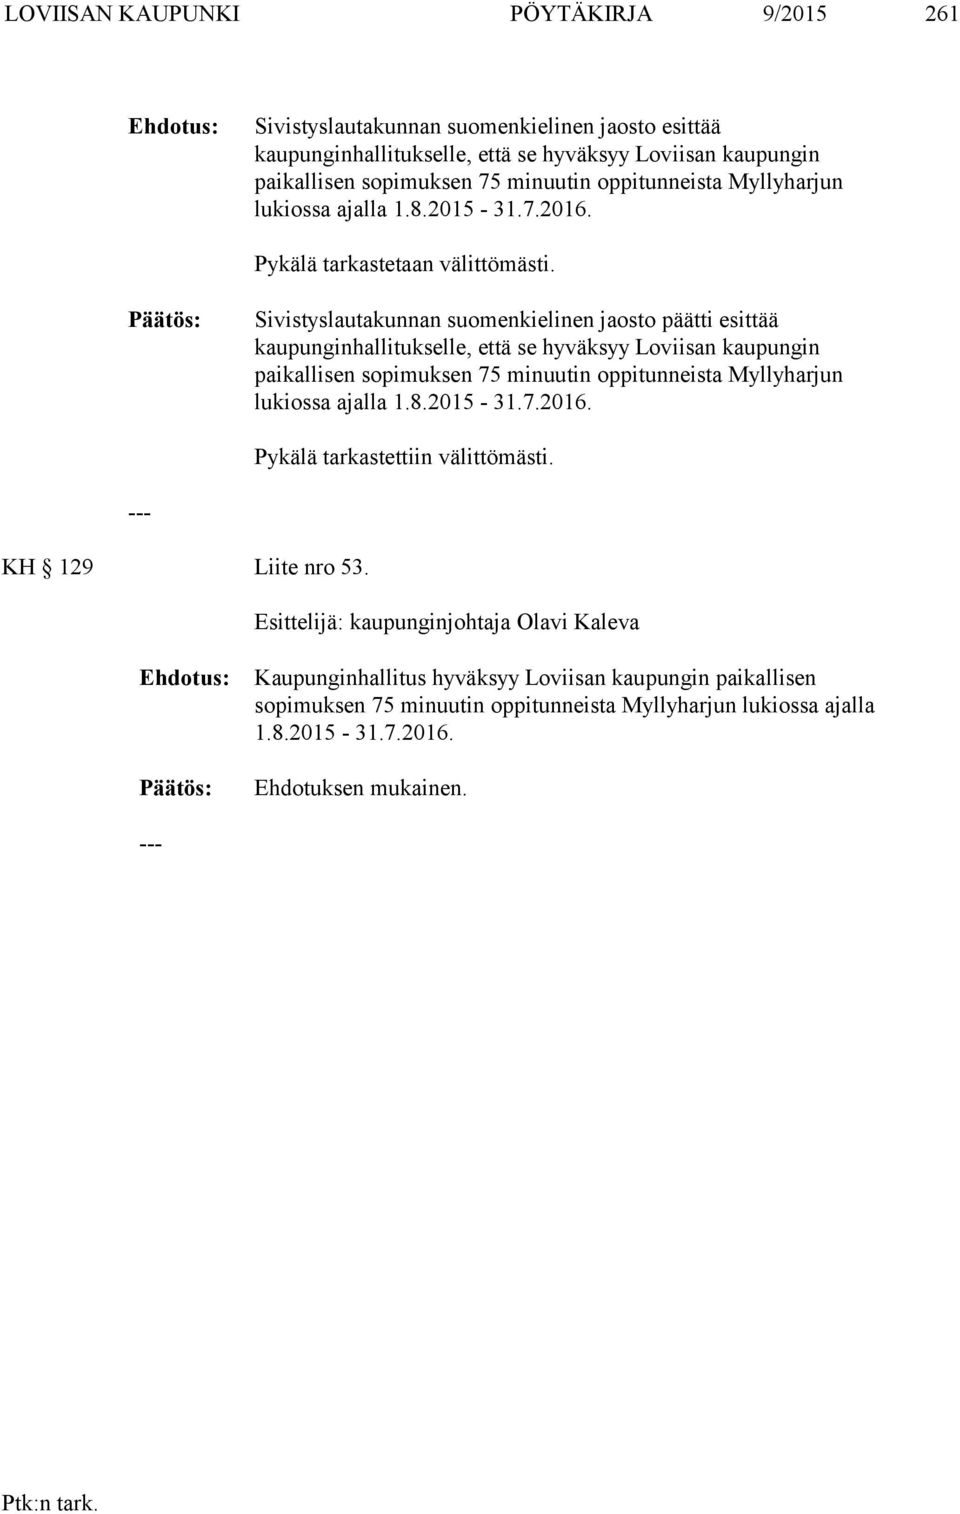 Sivistyslautakunnan suomenkielinen jaosto päätti esittää kaupunginhallitukselle, että se hyväksyy Loviisan kaupungin paikallisen sopimuksen 75 minuutin oppitunneista Myllyharjun lukiossa